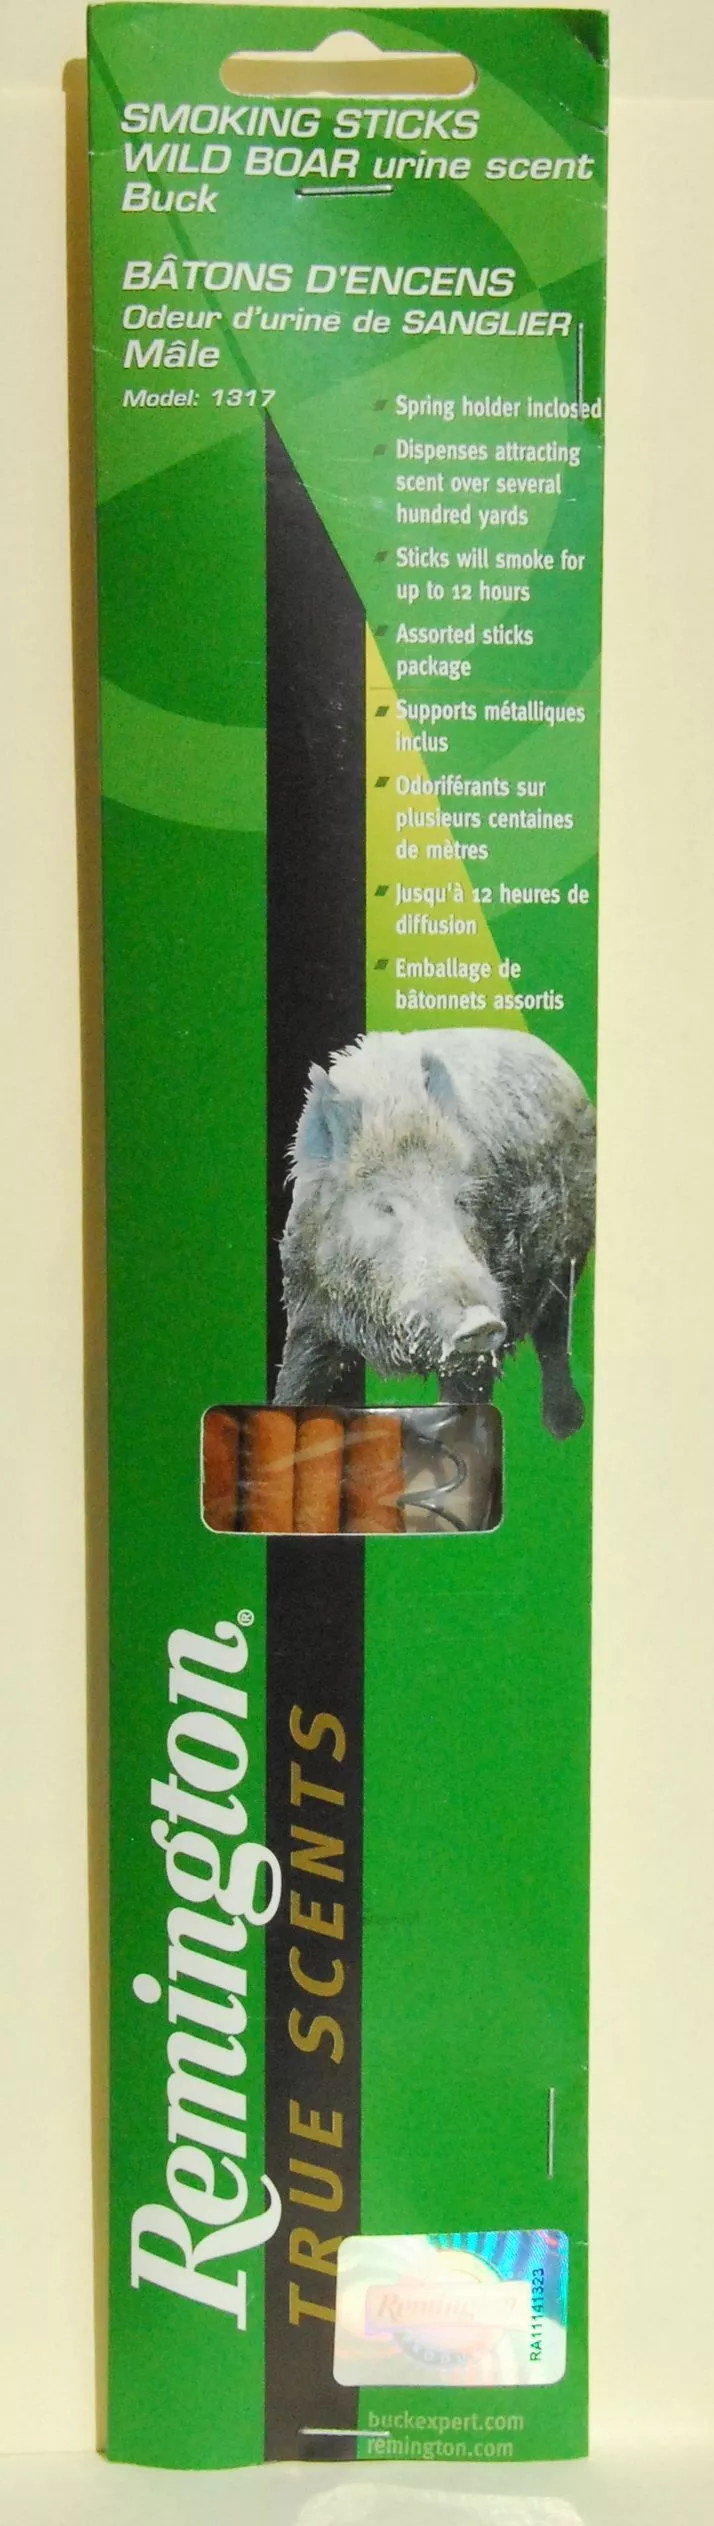 Приманка Remington для кабана - искуственный ароматизатор выделений самца, дымящ. палочки